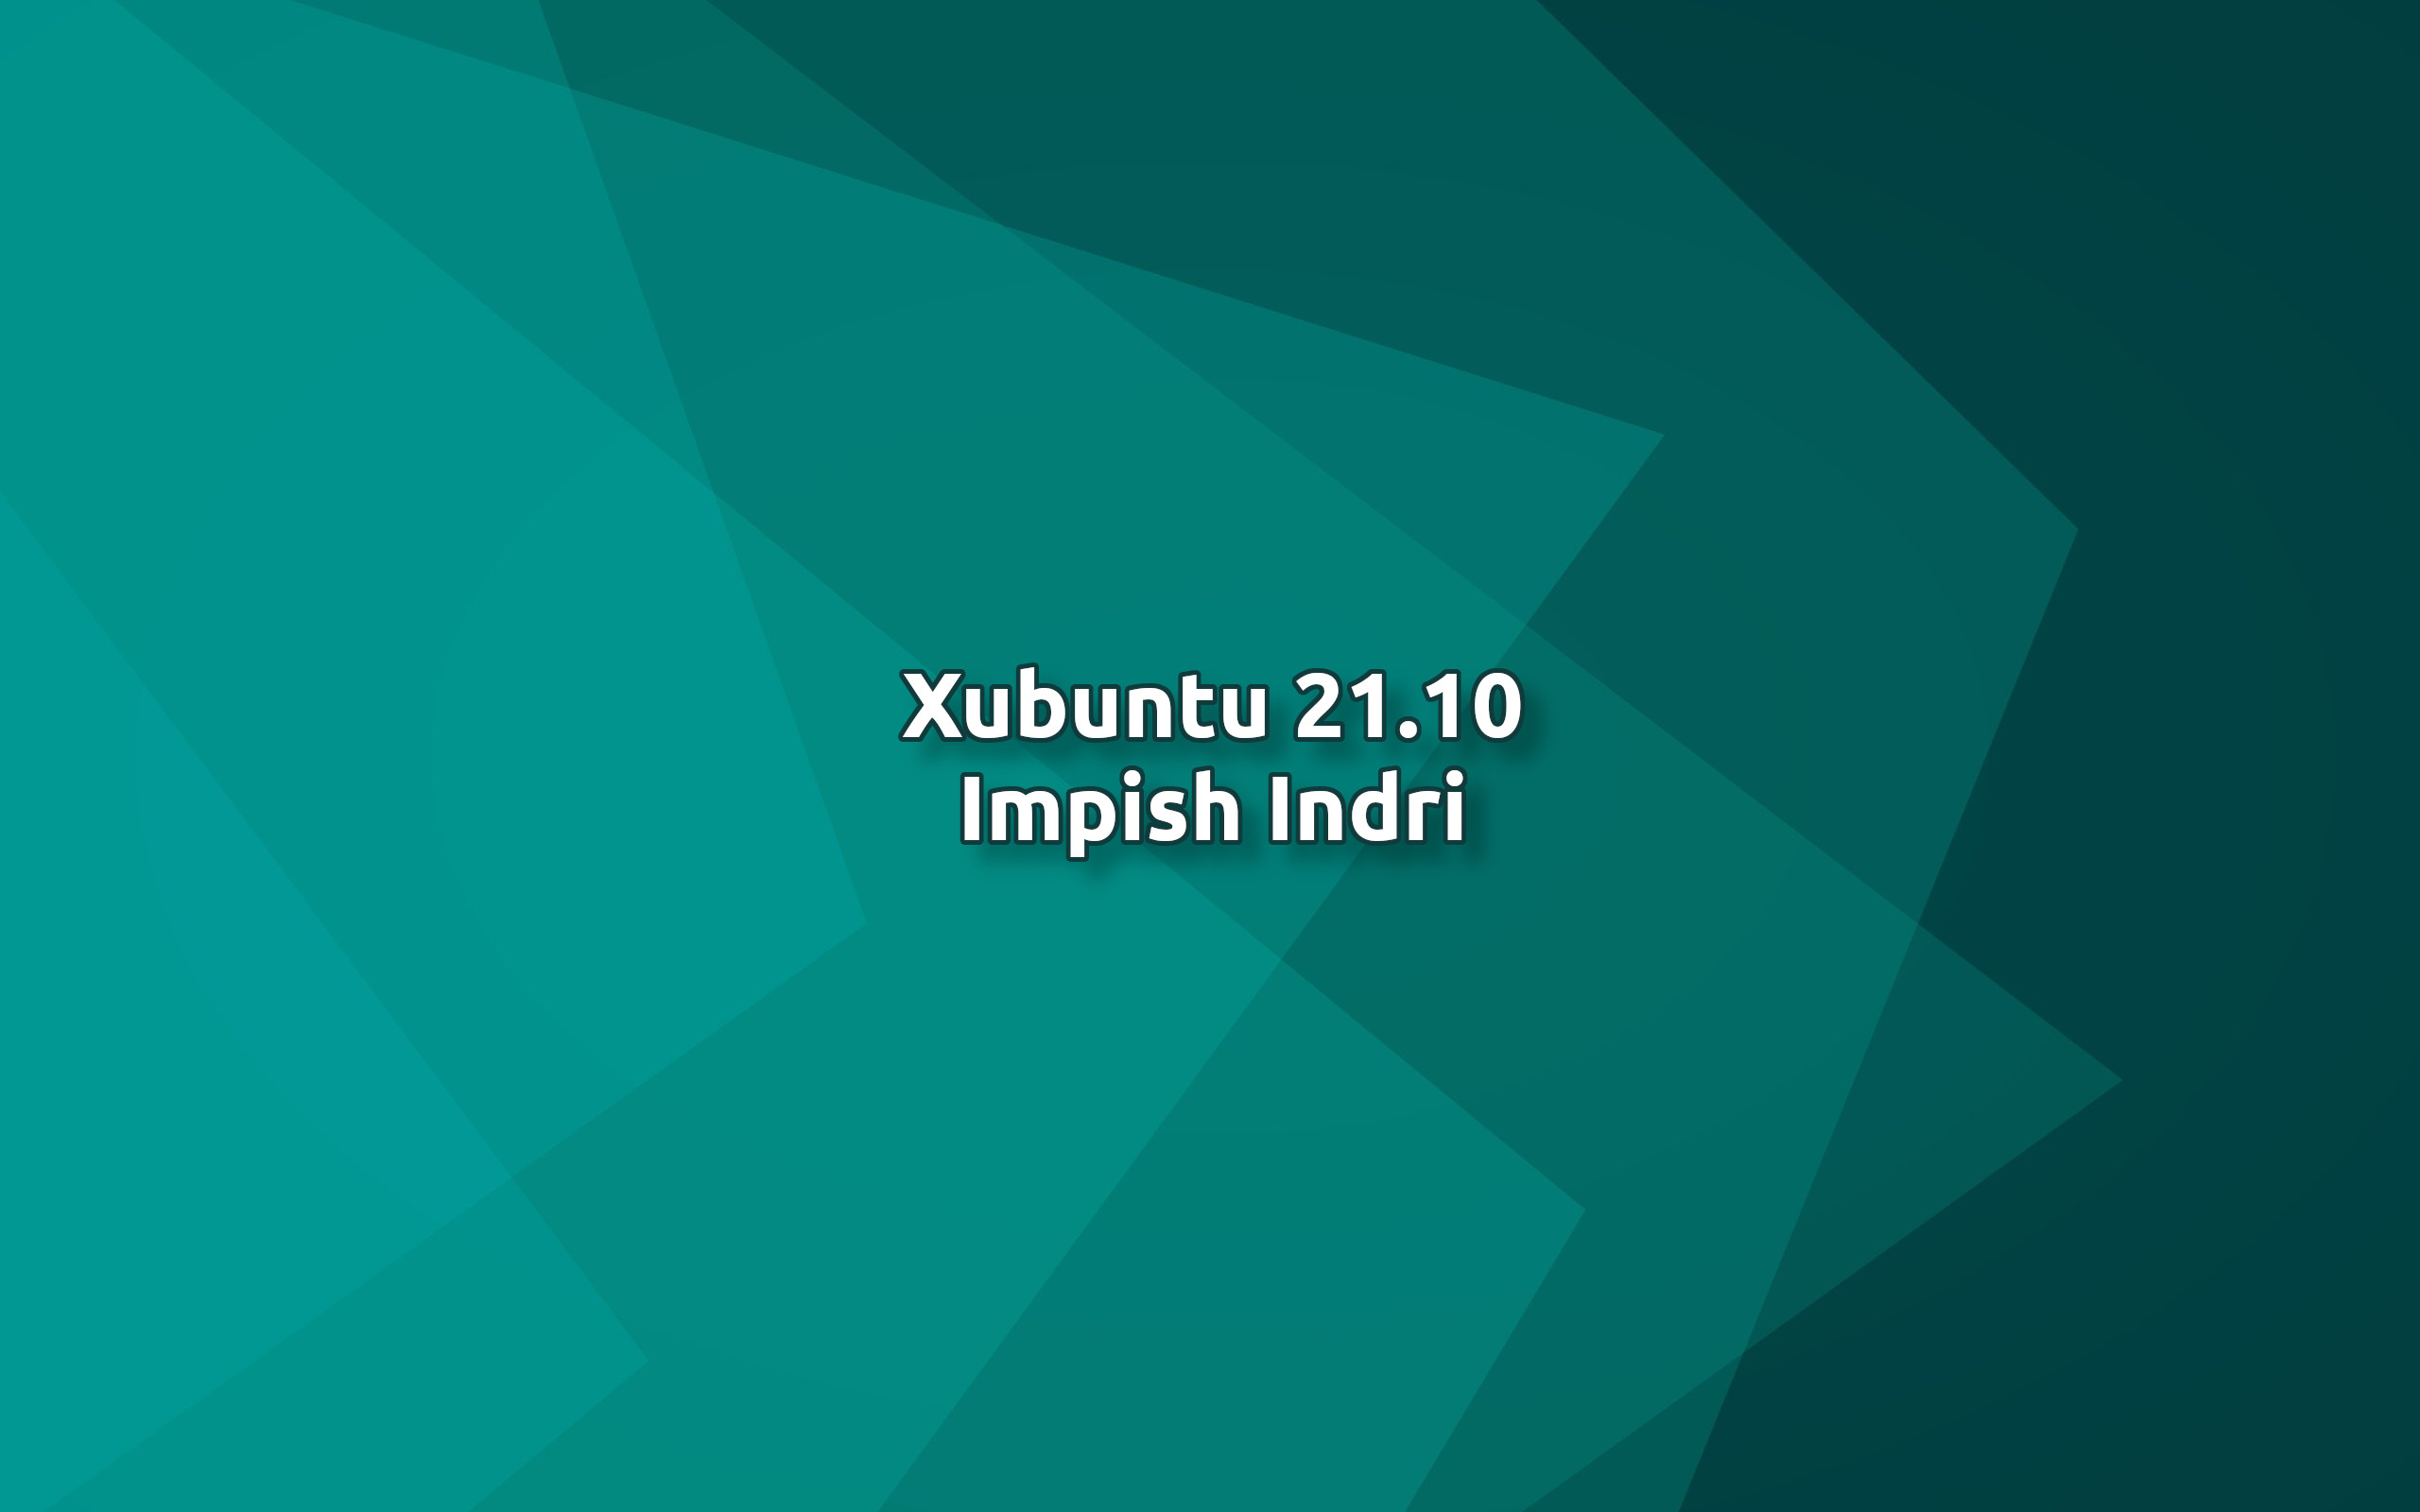 Xubuntu 21.10 Impish Indri featured image